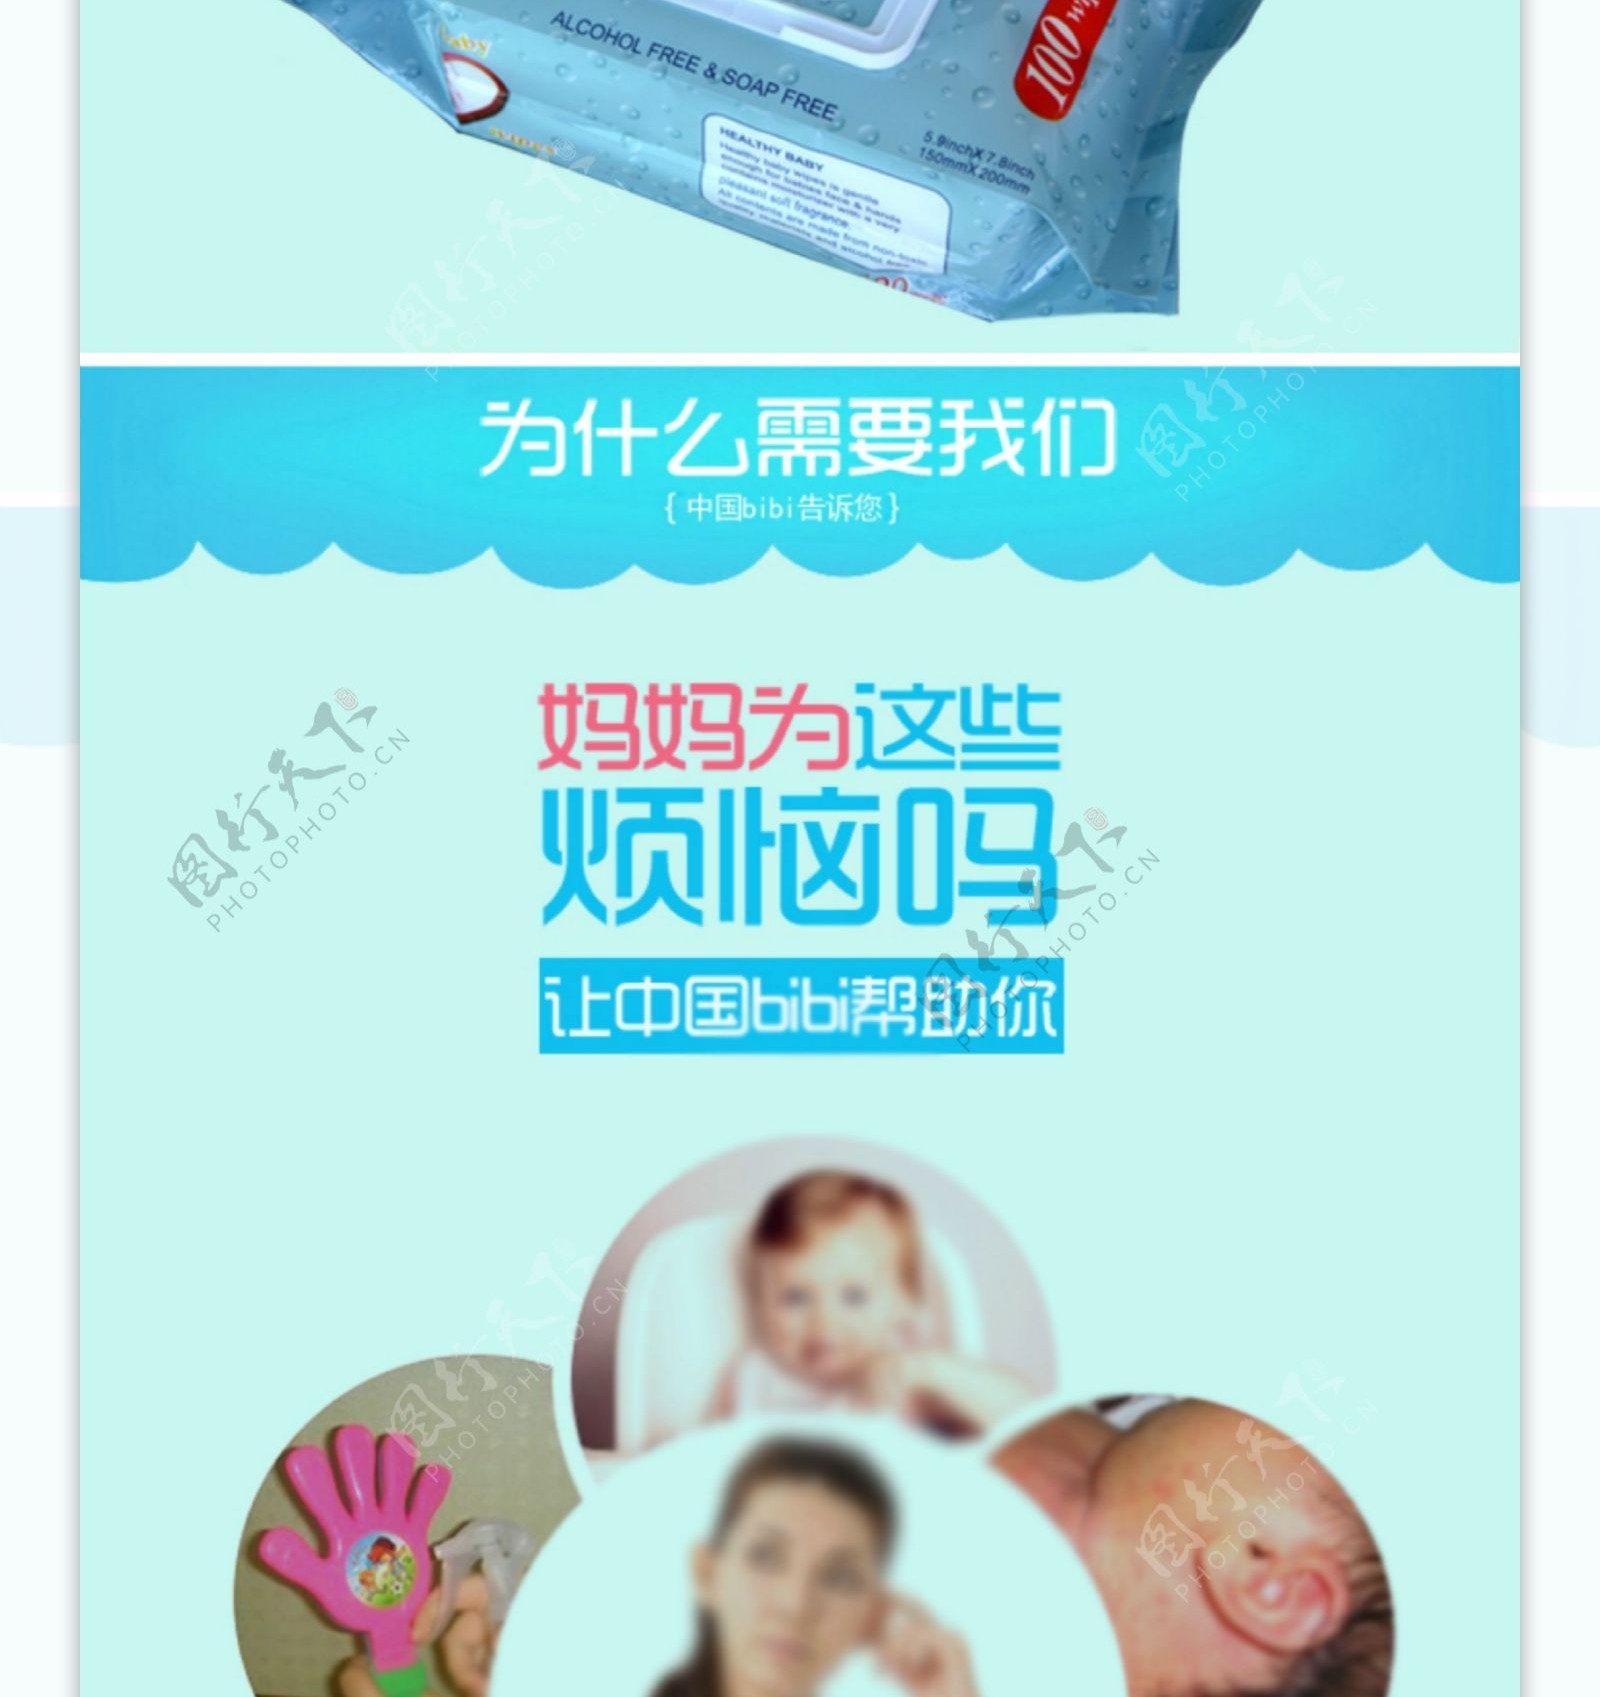 母婴婴儿用品婴儿湿巾首页详情页促销页面